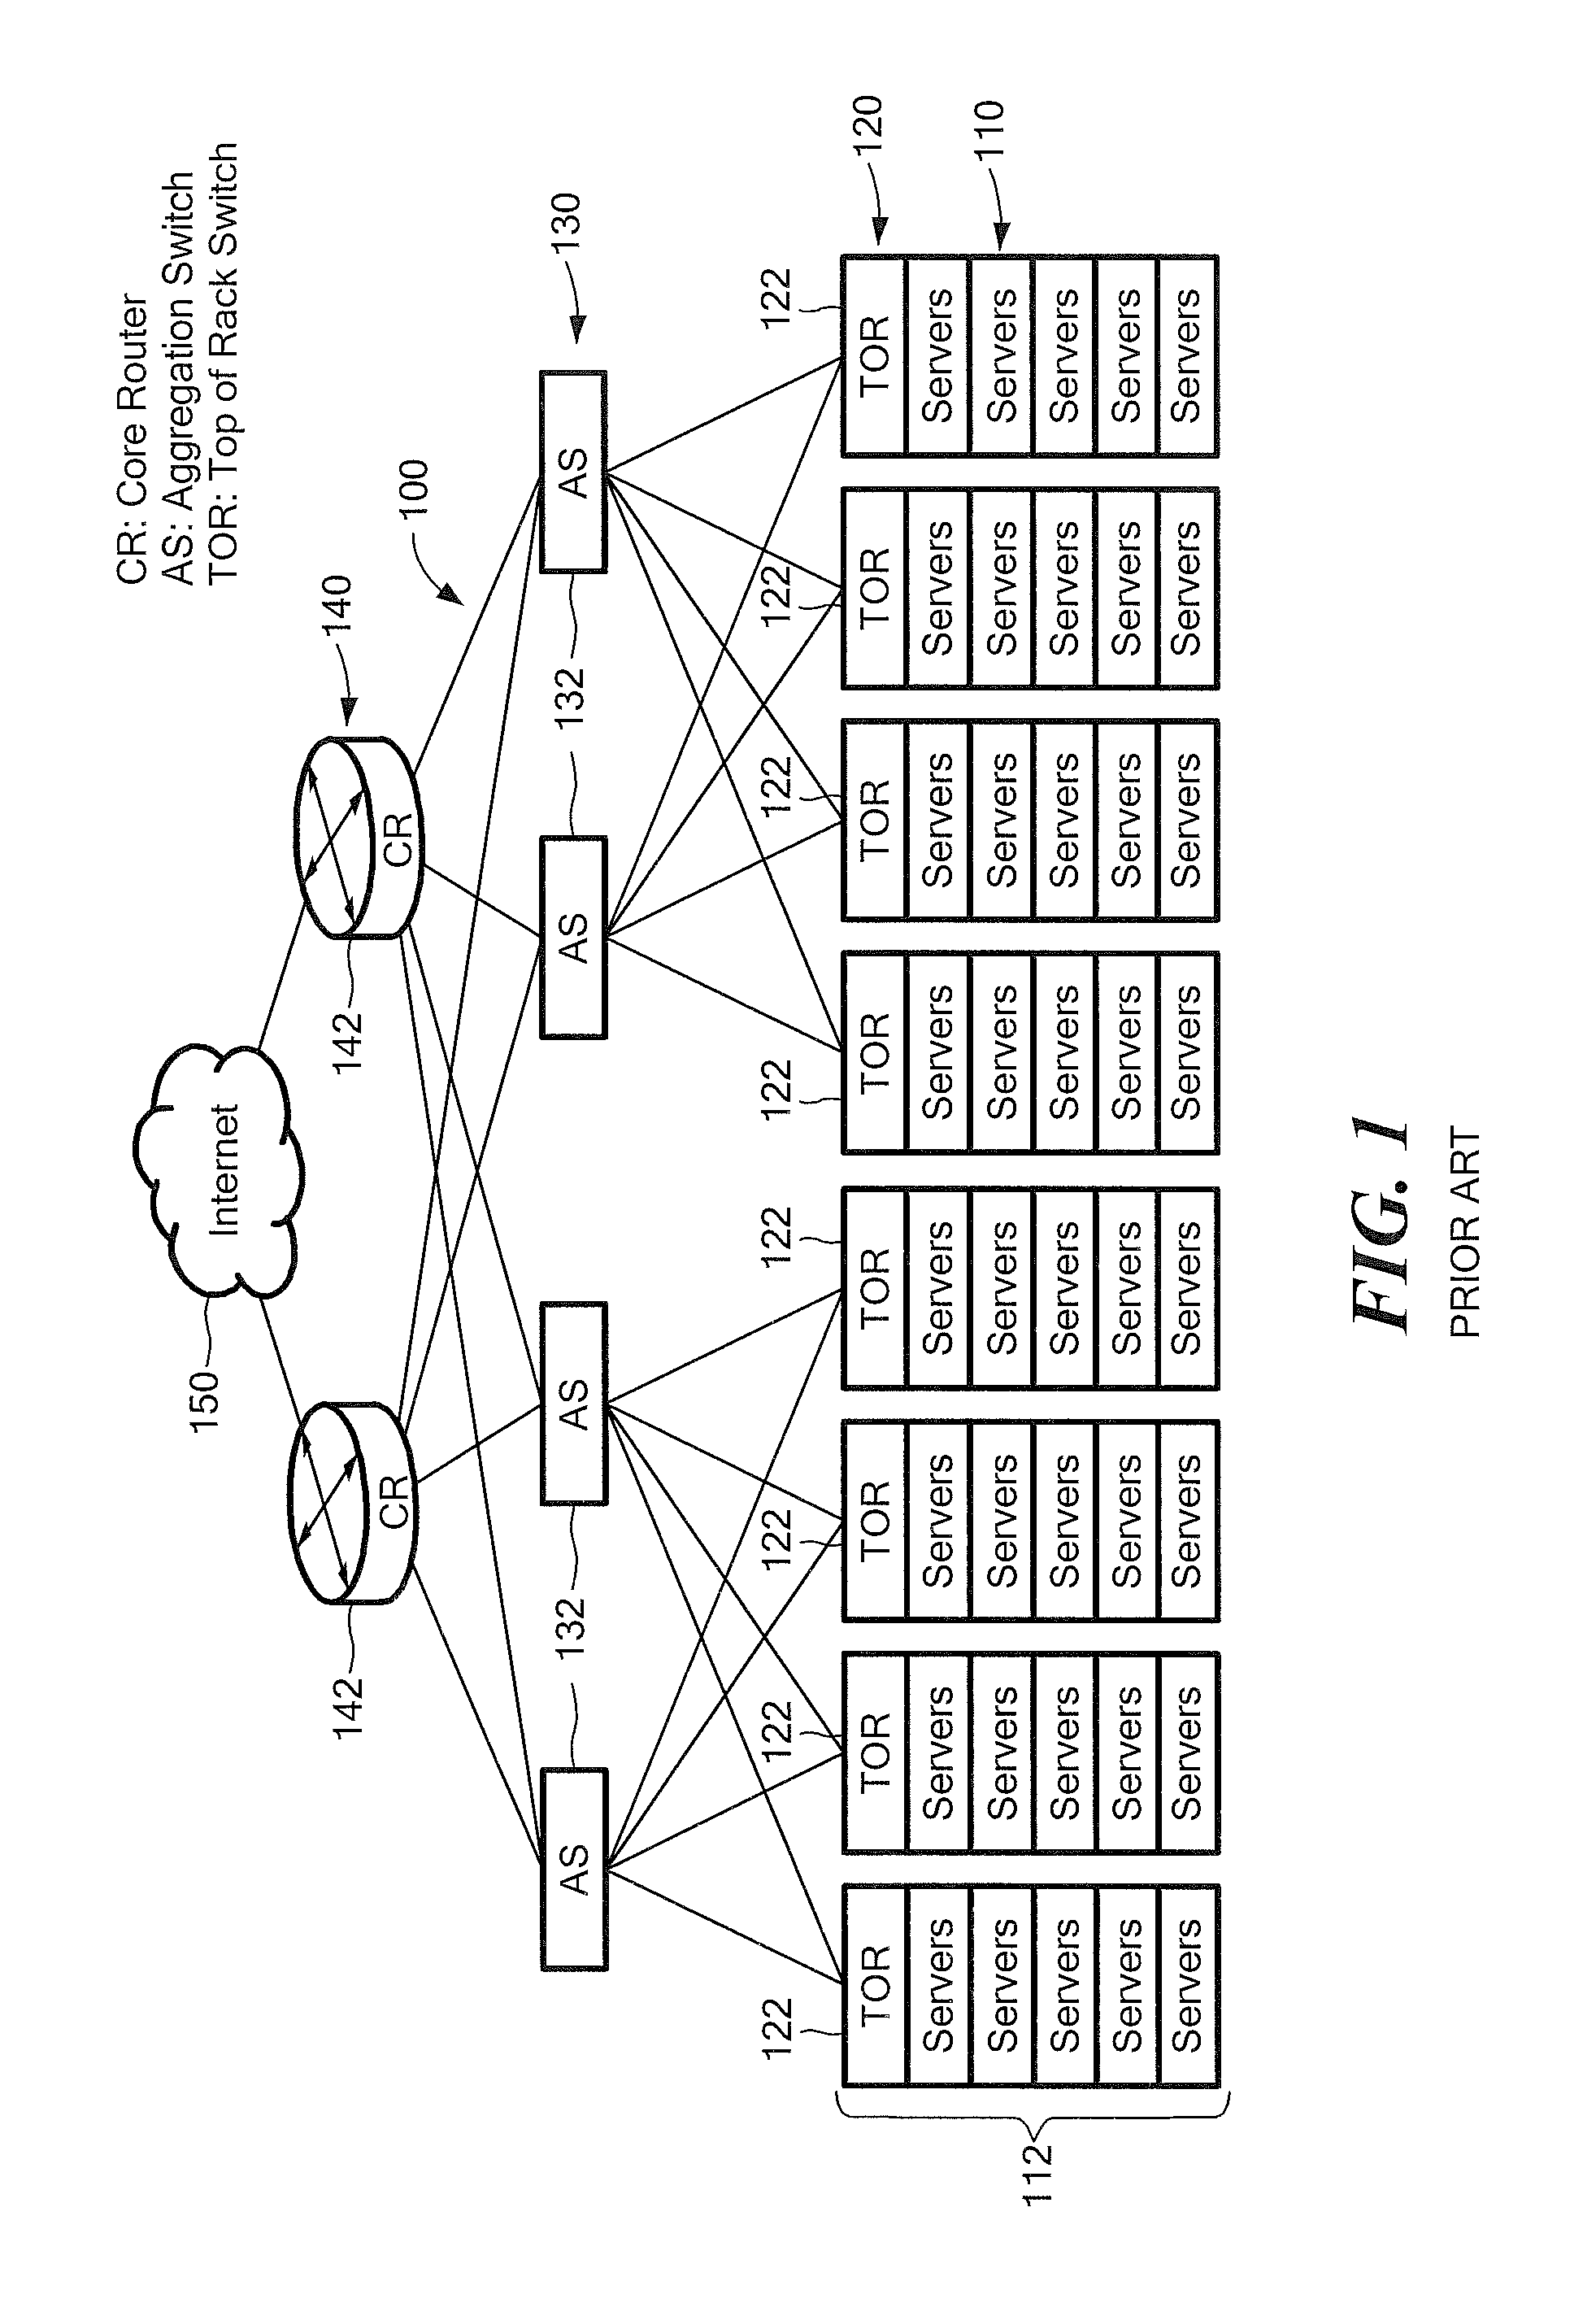 Network node connection configuration